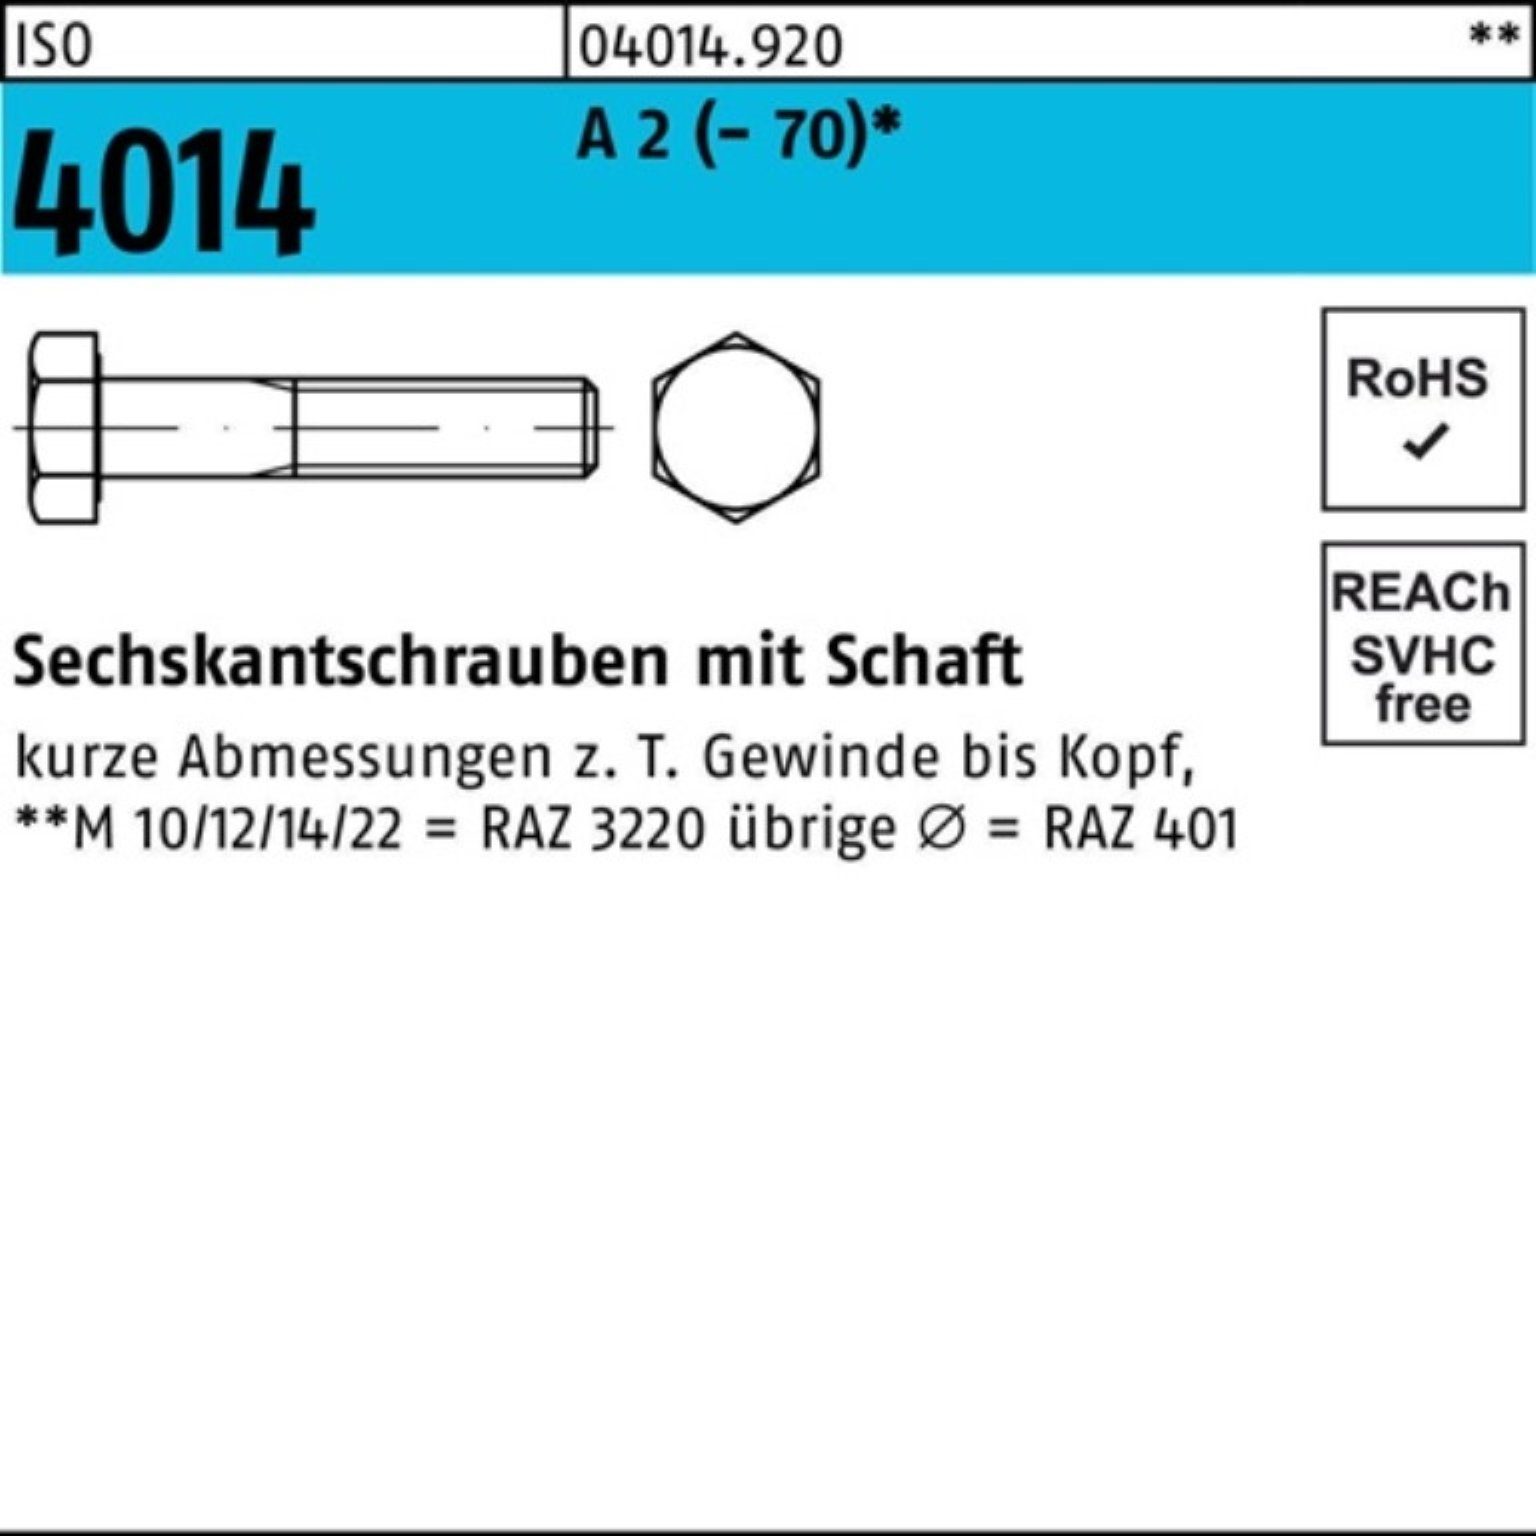 140 ISO Bufab Sechskantschraube M36x 4014 Pack 1 2 ISO Schaft Stück A Sechskantschraube 100er